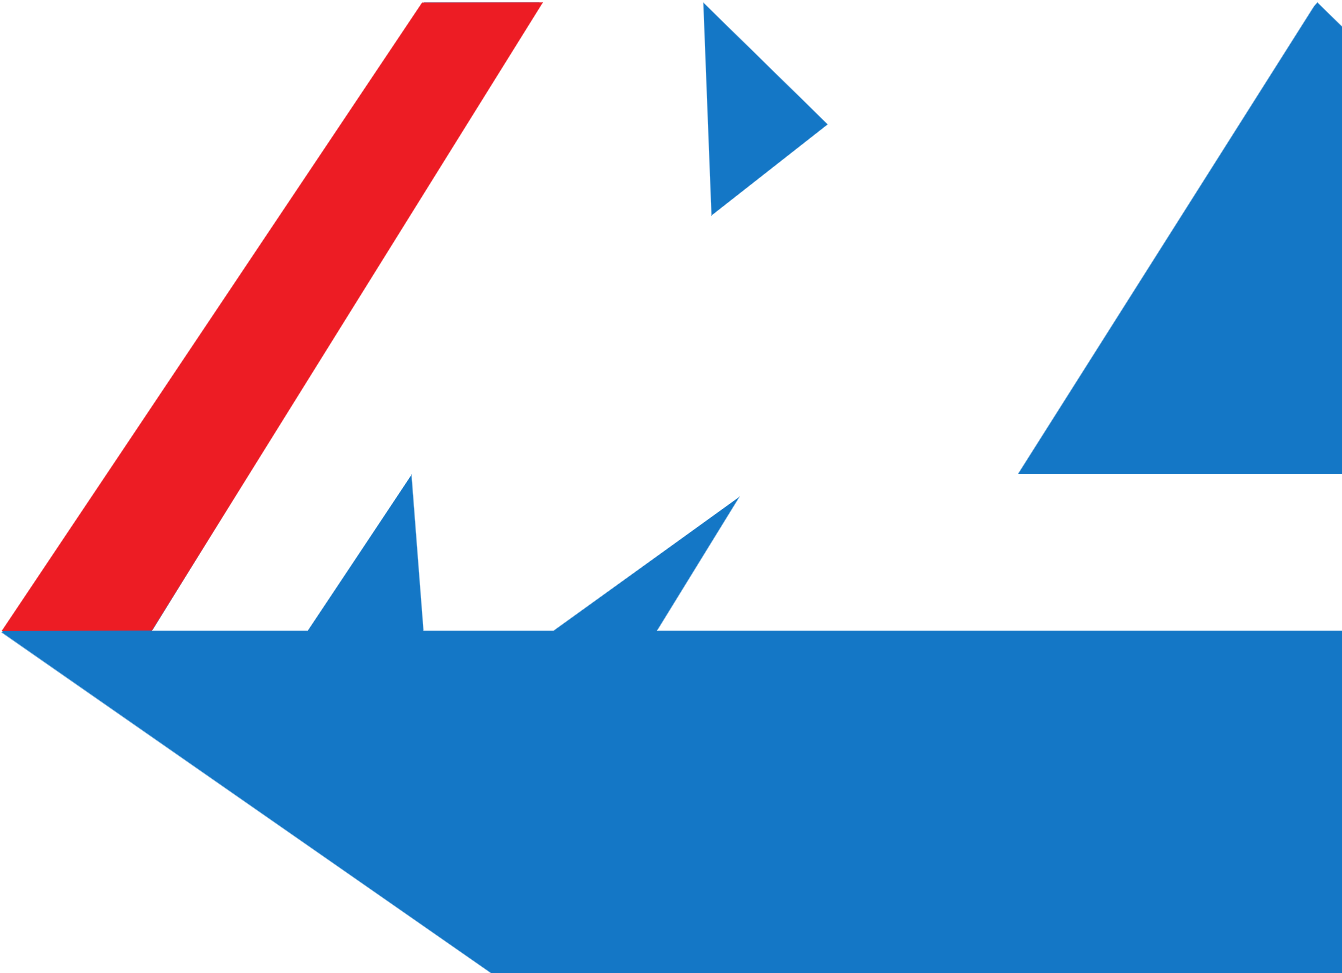 Mainfreight logo (PNG transparent)